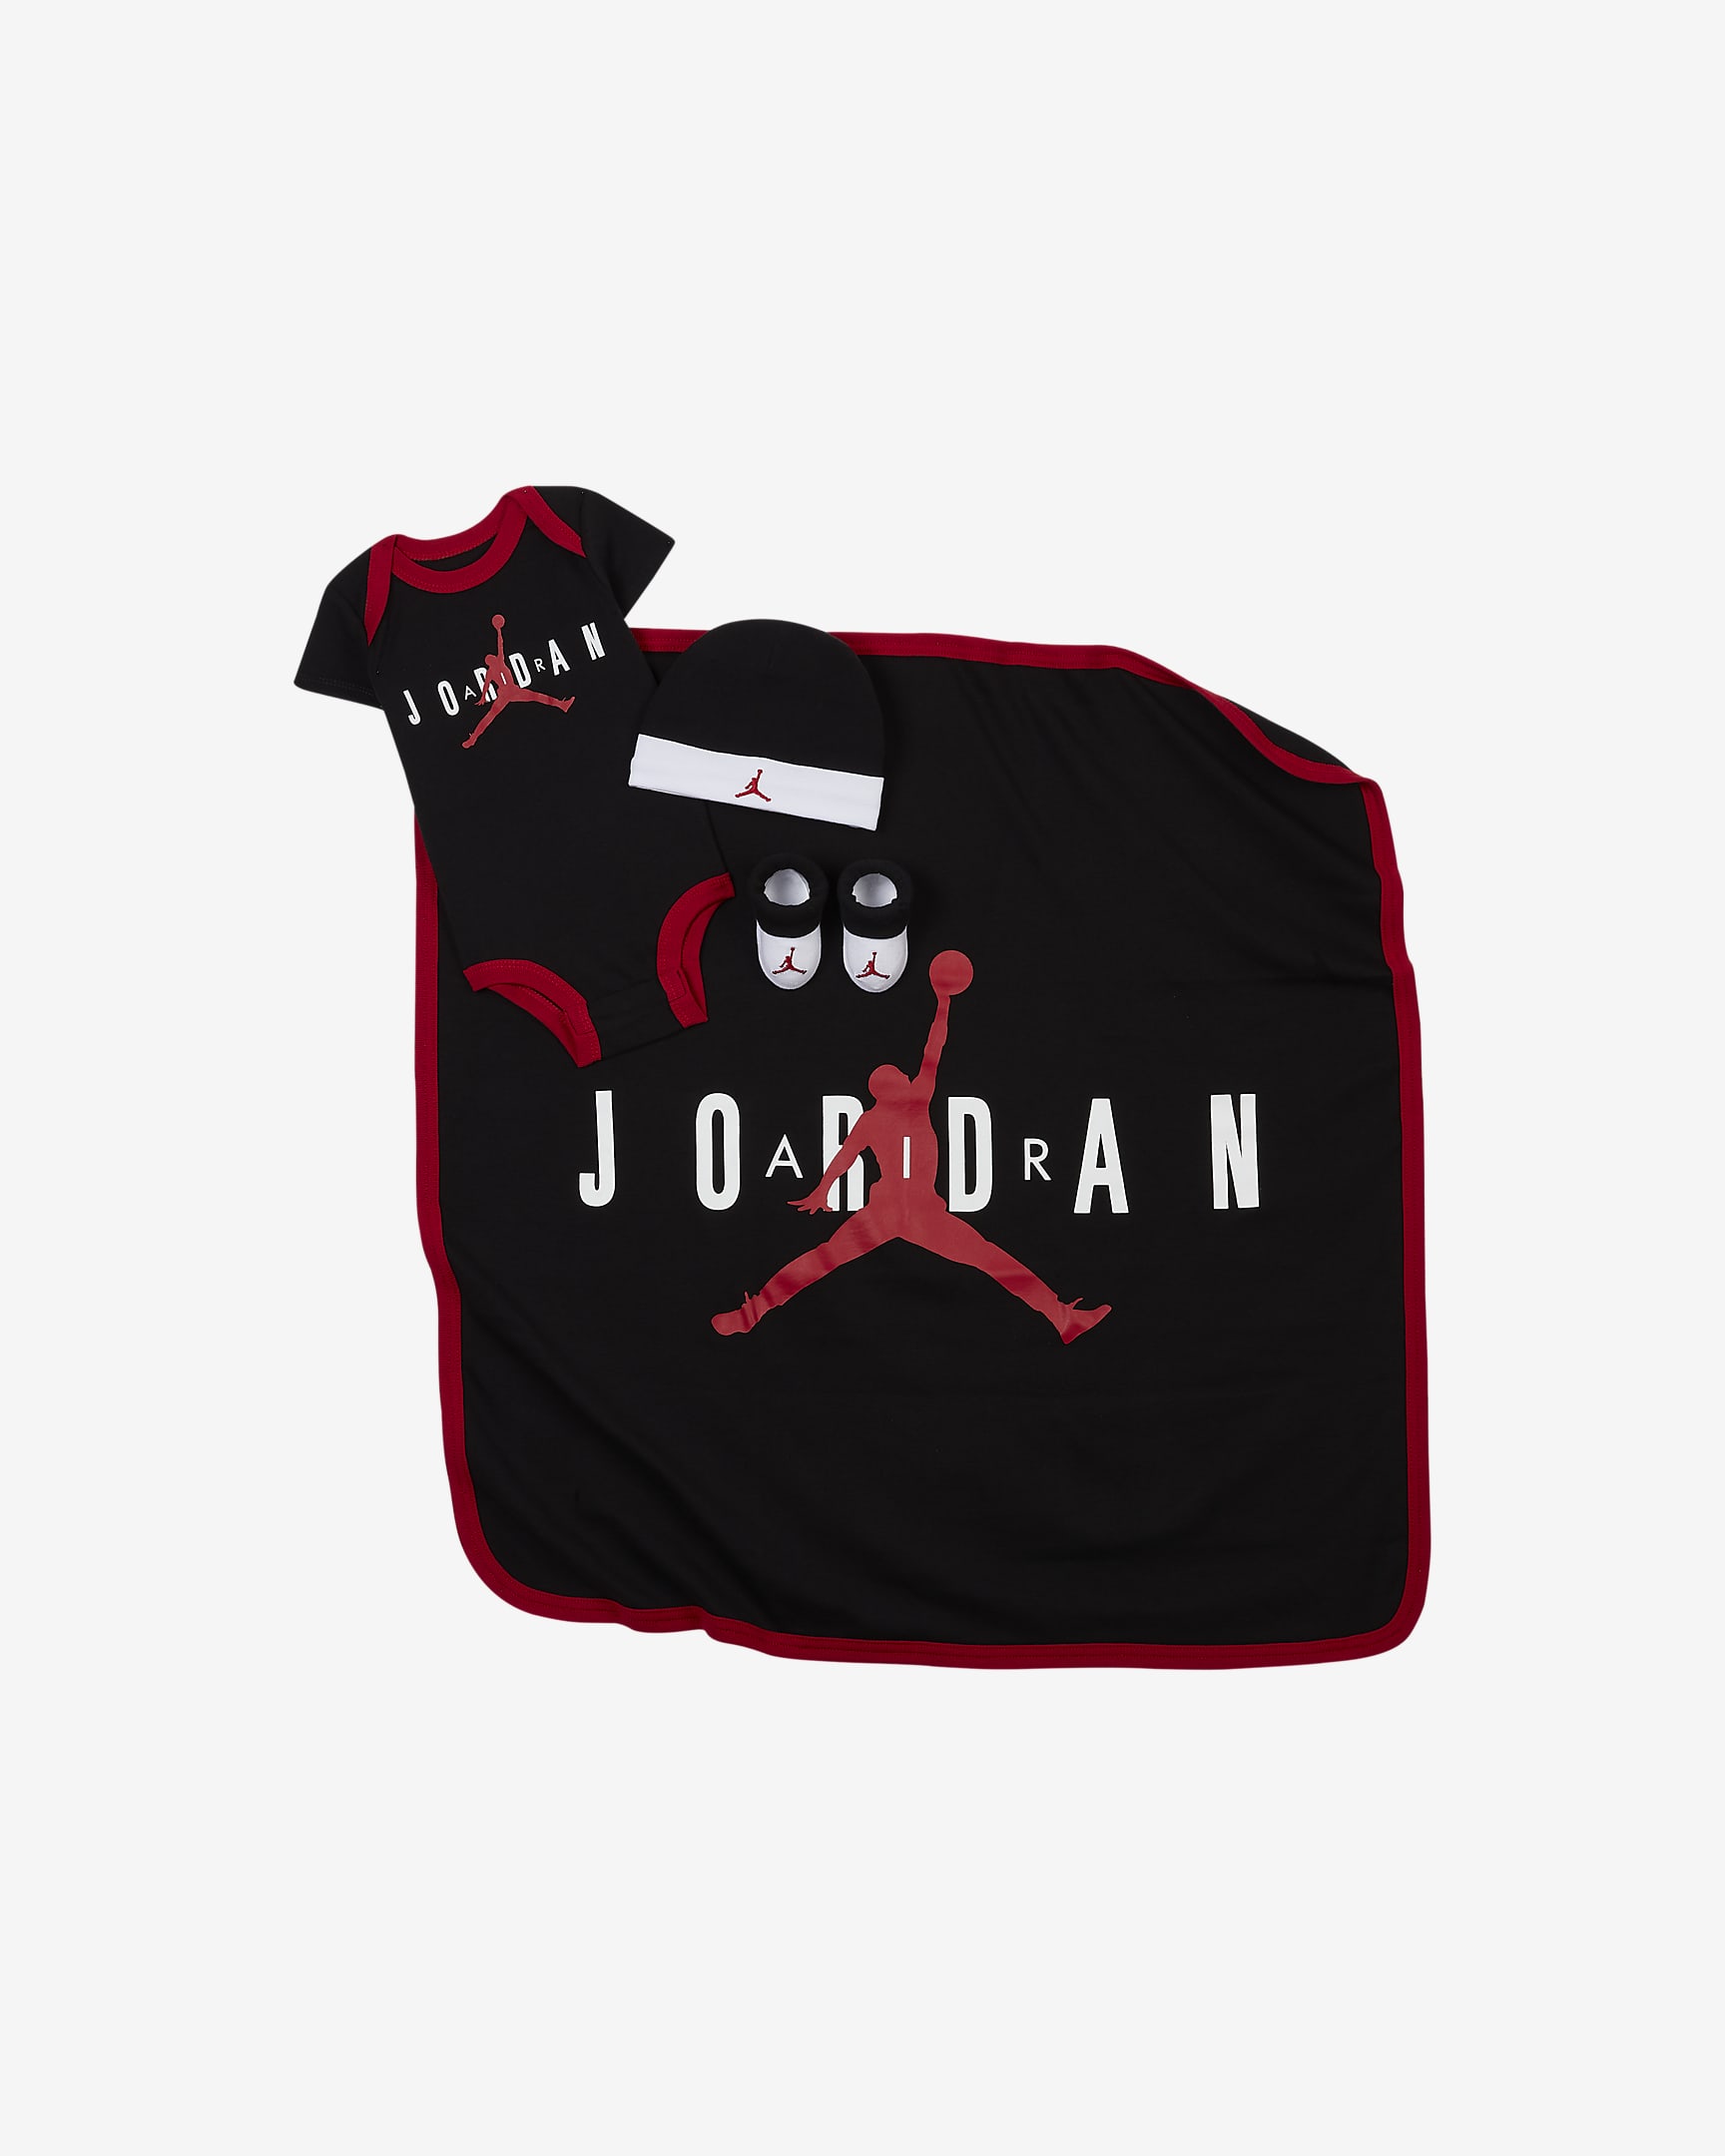 Air Jordan Baby Bodysuit, Beanie, Booties and Blanket Set. Nike.com